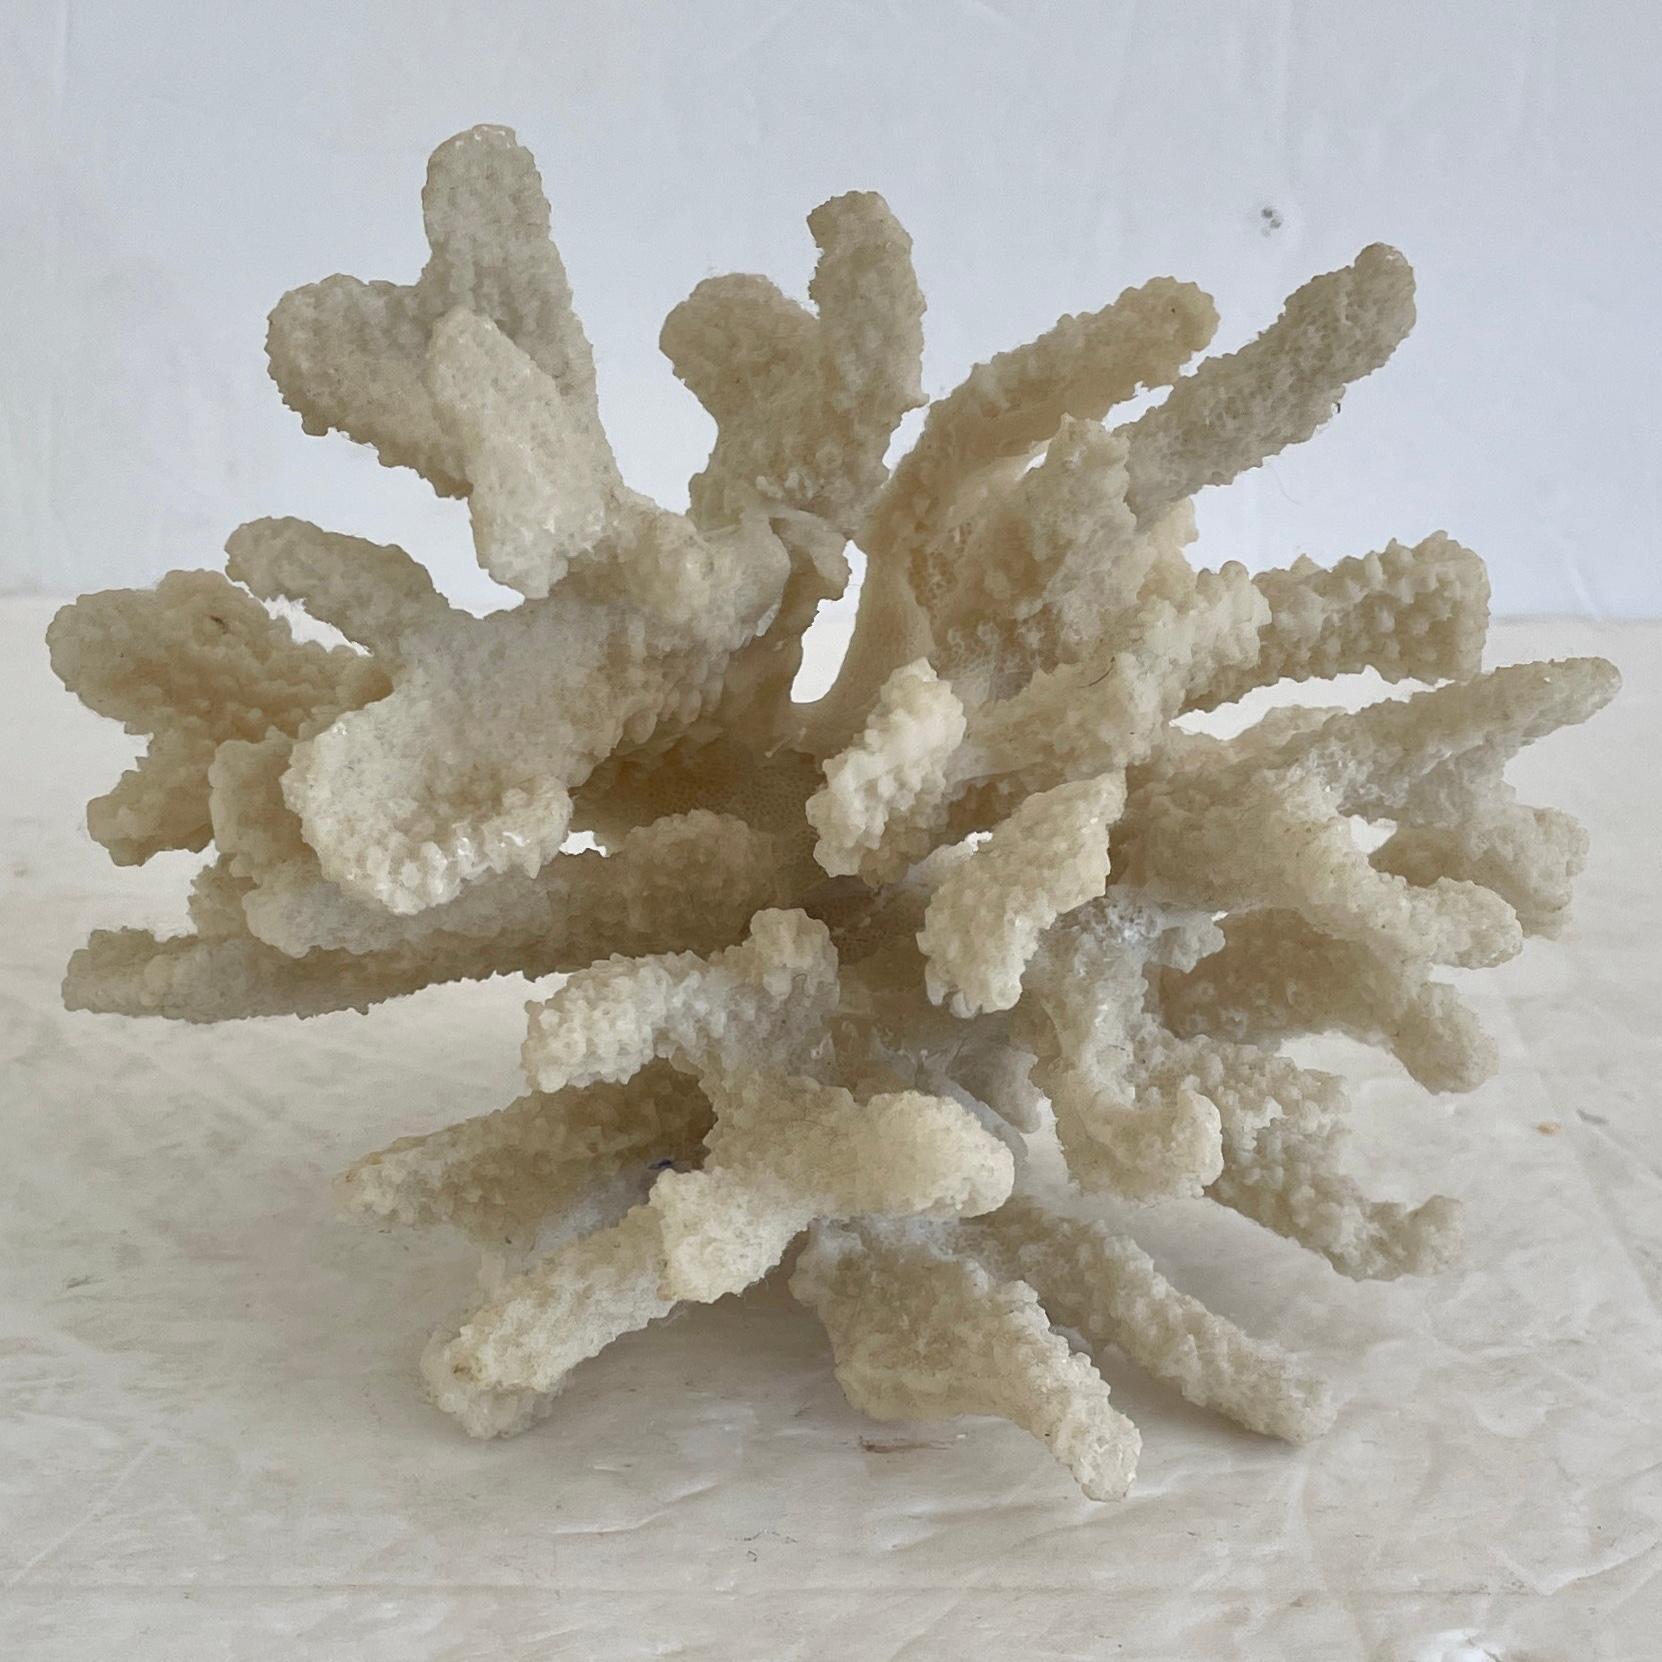 Magnifique petit arbre naturel de récif corallien pour la décoration de table. Un complément idéal pour vos intérieurs et plateaux de table d'inspiration boho chic.